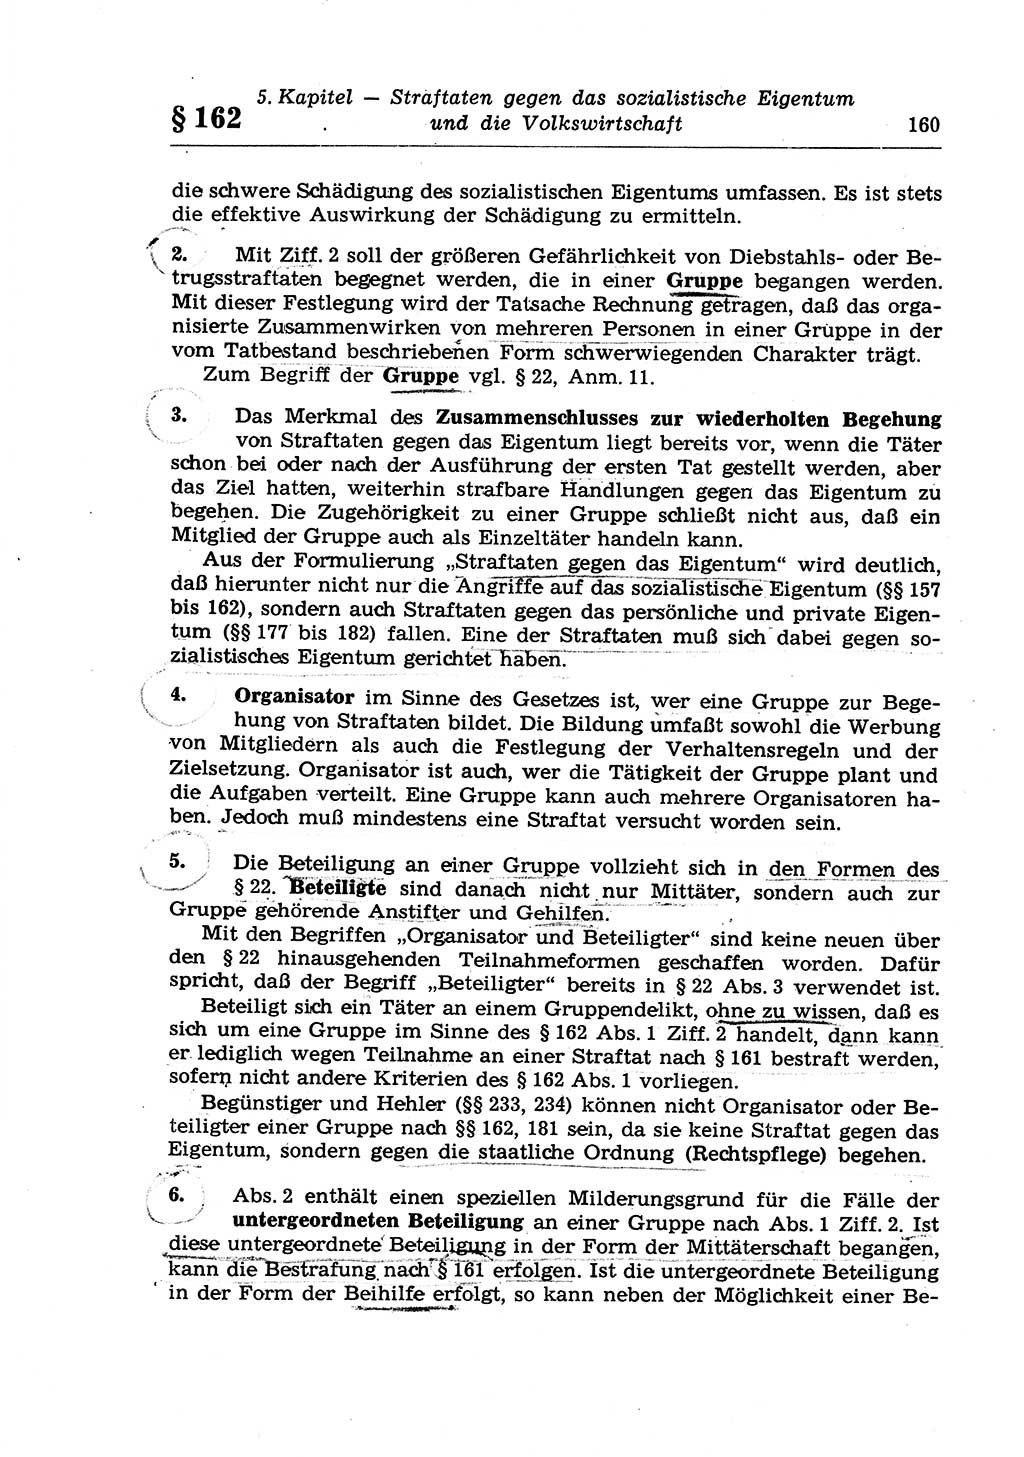 Strafrecht der Deutschen Demokratischen Republik (DDR), Lehrkommentar zum Strafgesetzbuch (StGB), Besonderer Teil 1970, Seite 160 (Strafr. DDR Lehrkomm. StGB BT 1970, S. 160)